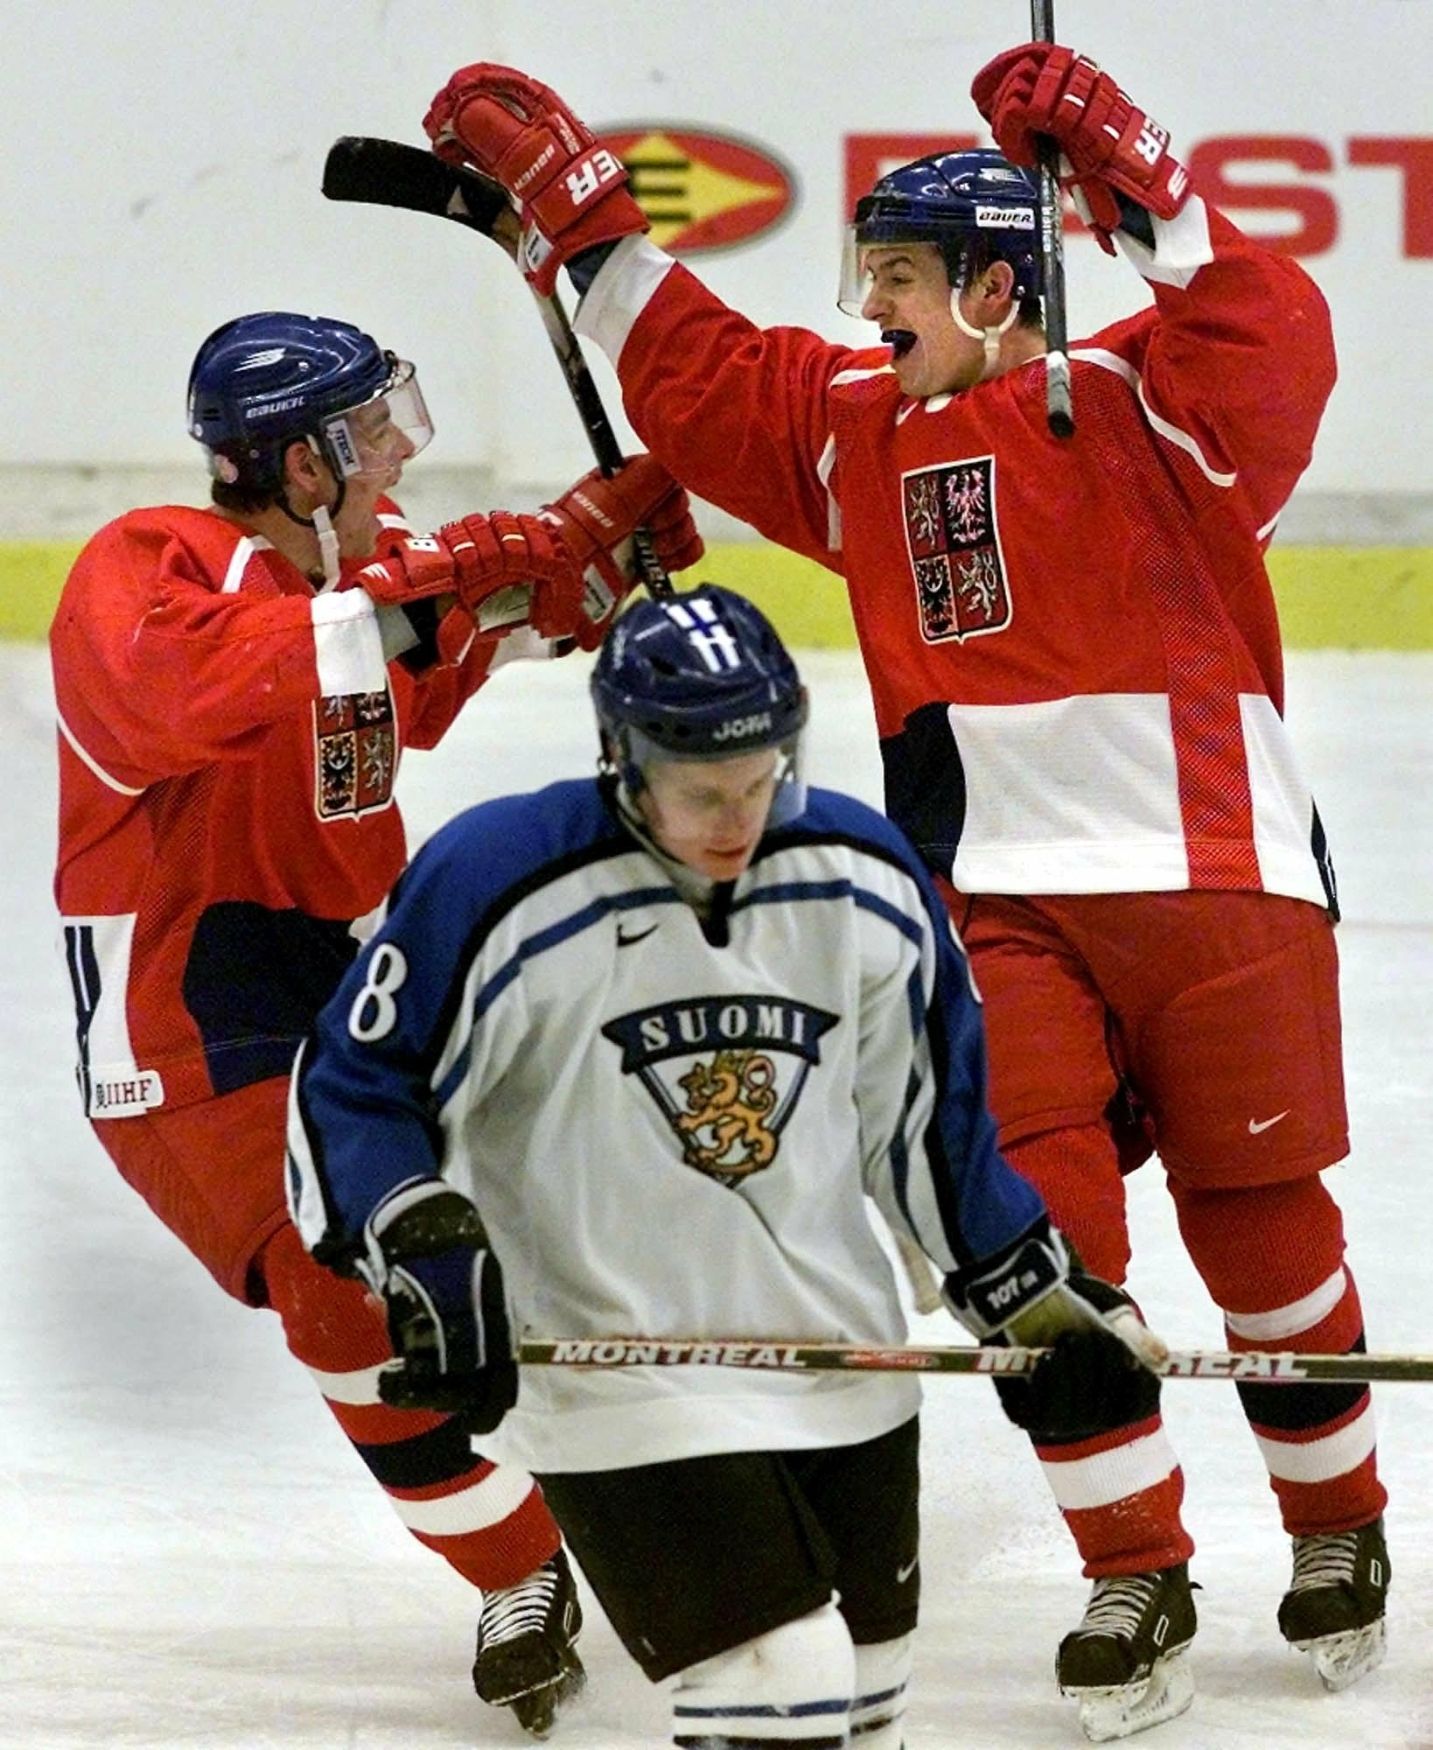 Čeští hokejisté na MS juniorů 2000 ve Švédsku: Zdeněk Kutlák (vlevo) a Jaroslav Kristek